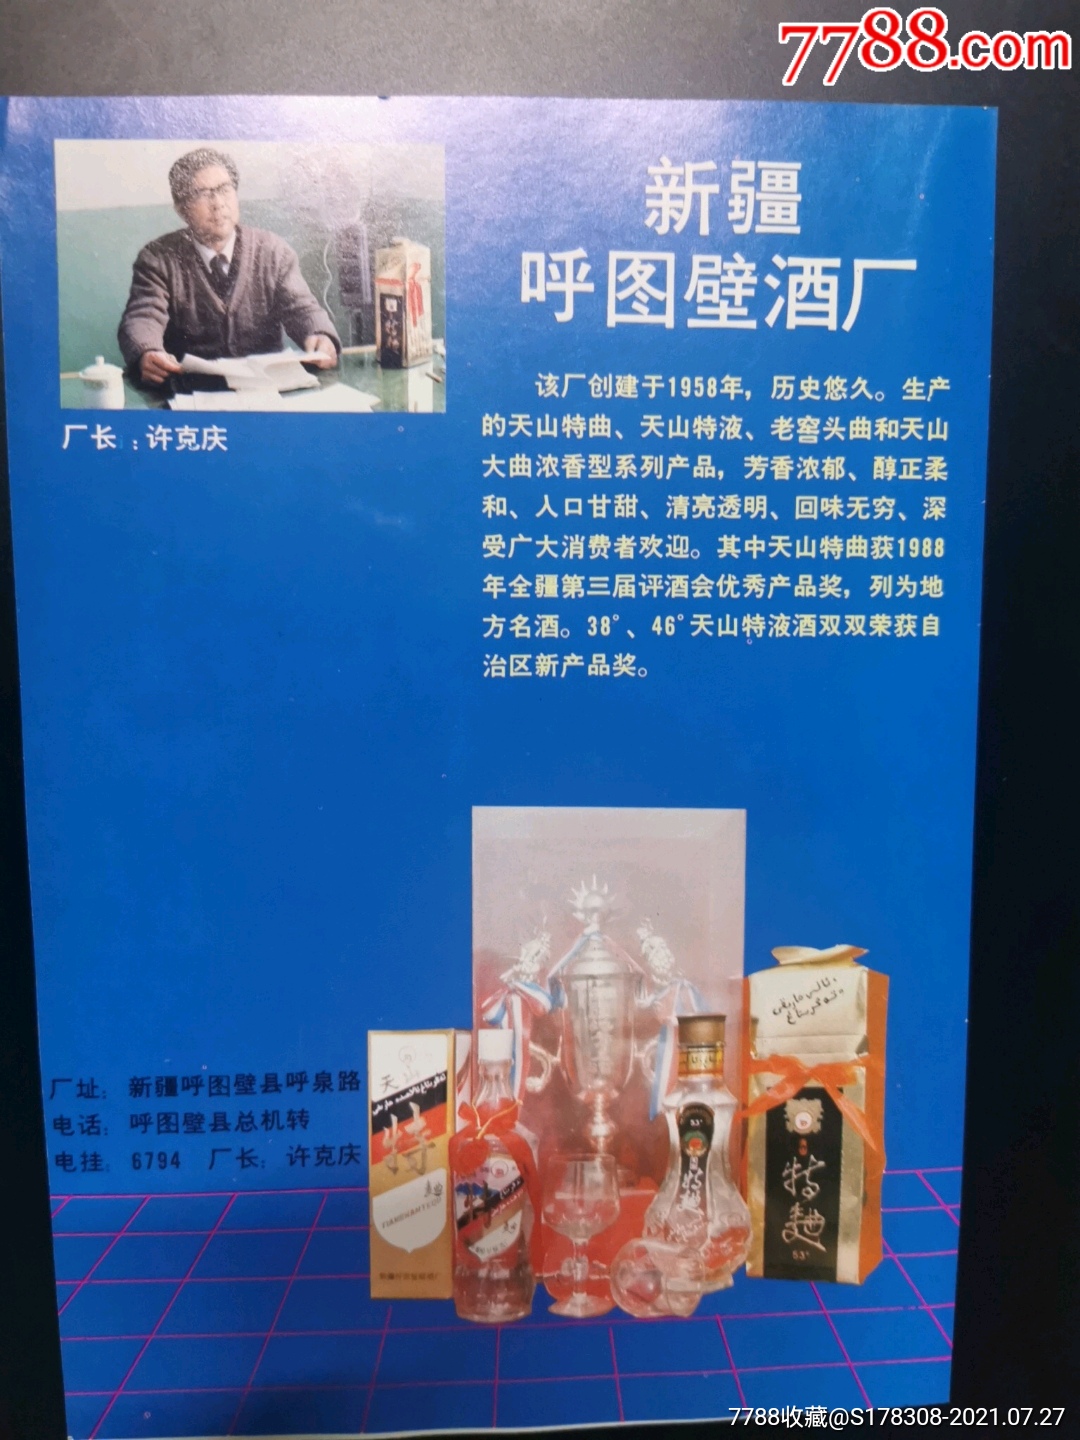 独特的宣传酒厂广告图片